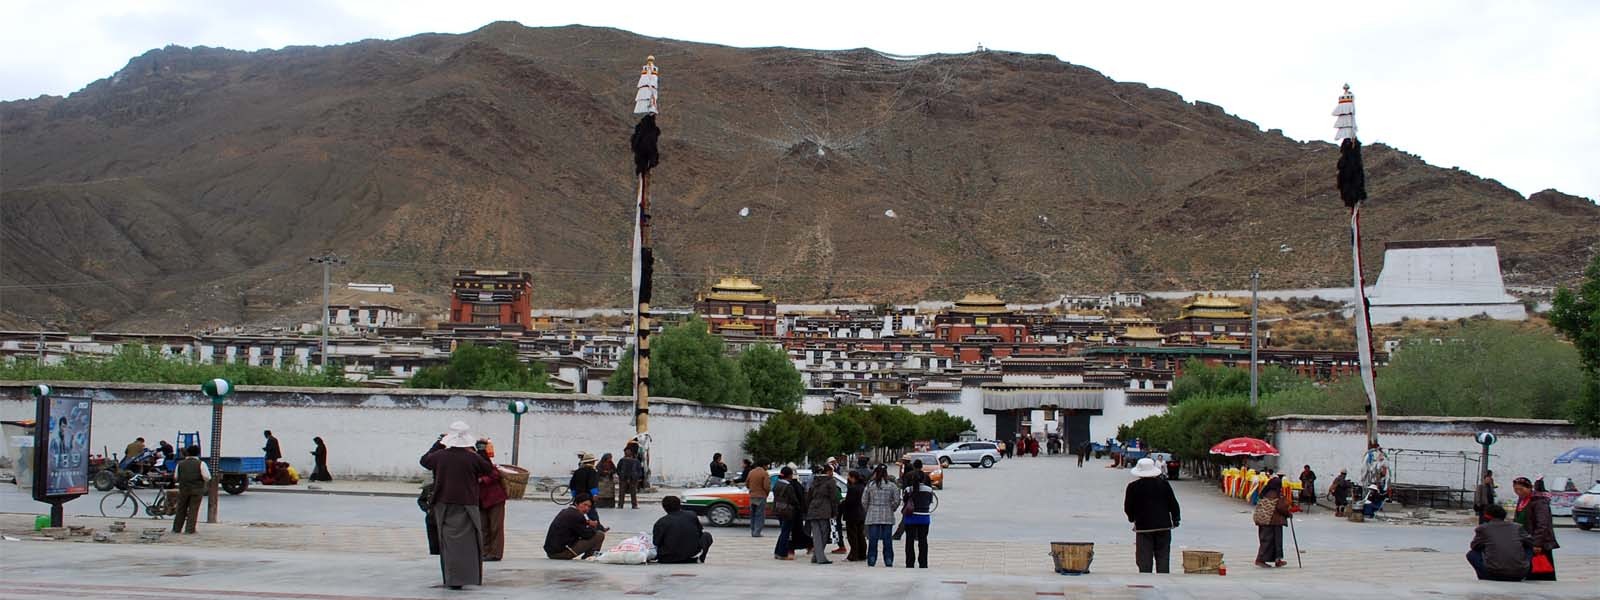 Lhasa to Kathmandu Overland Tour